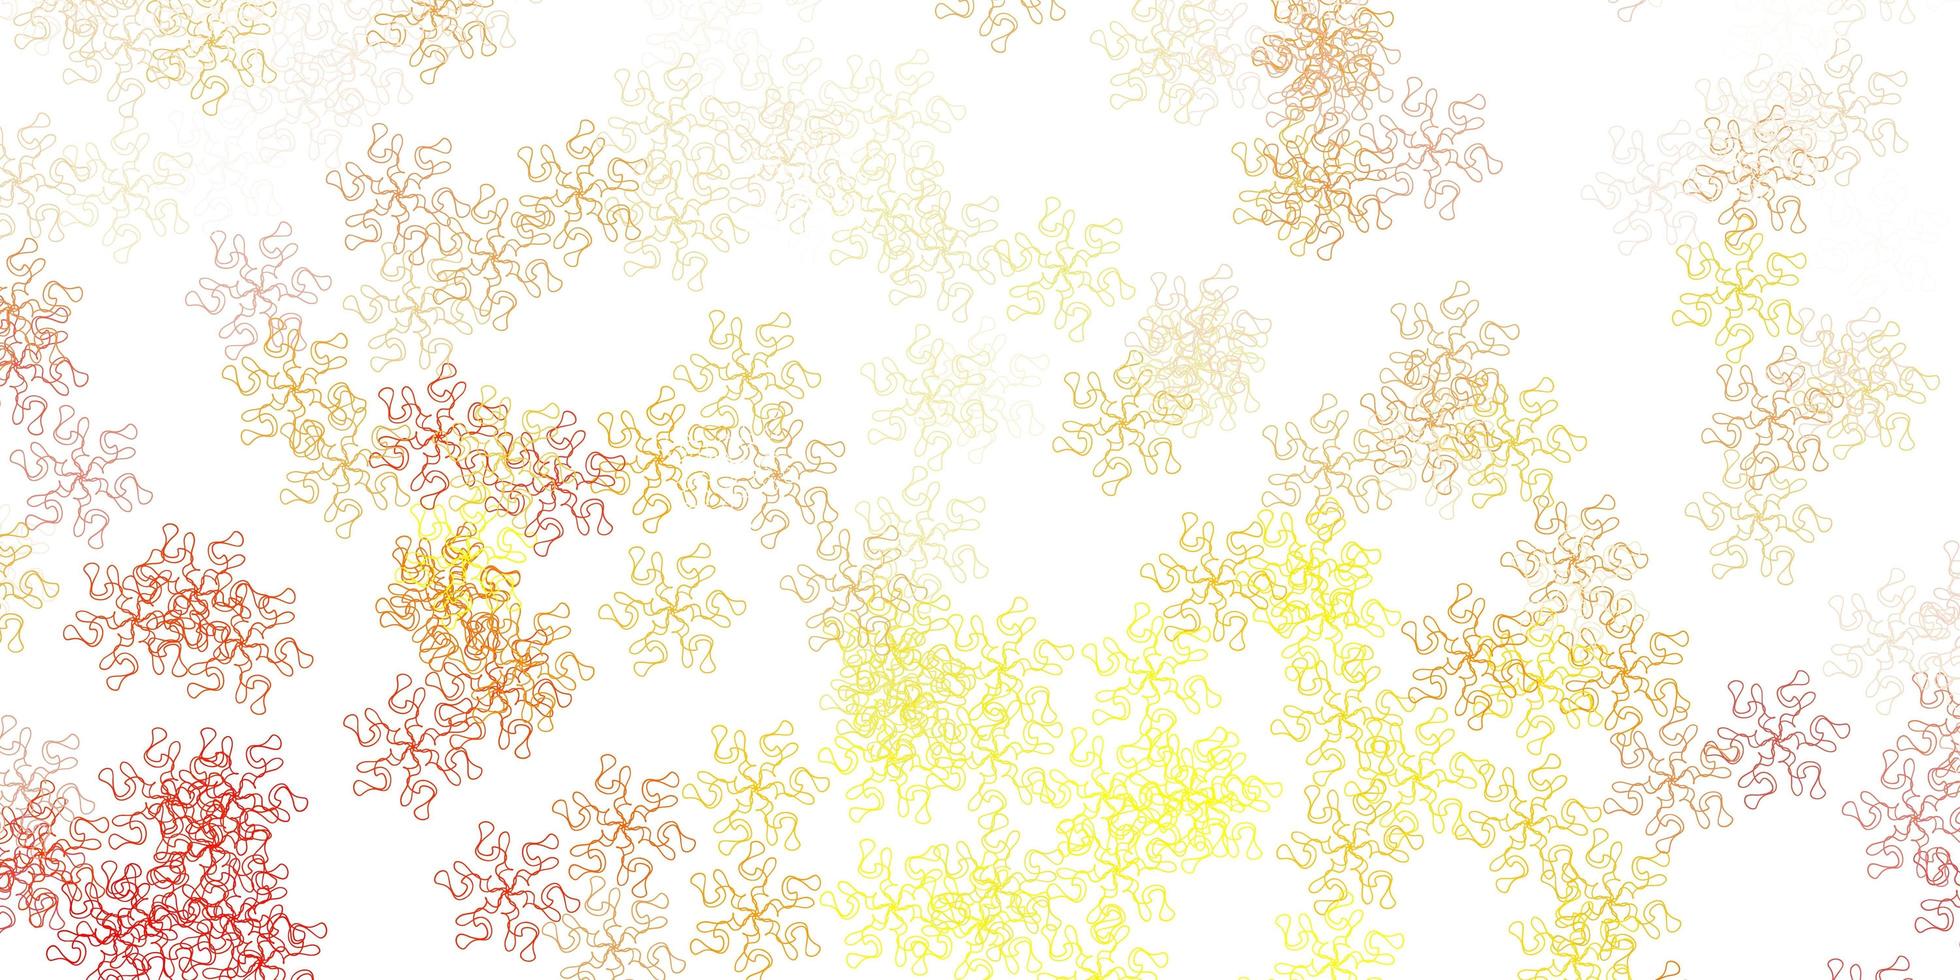 modello di doodle vettoriale arancione chiaro con fiori.